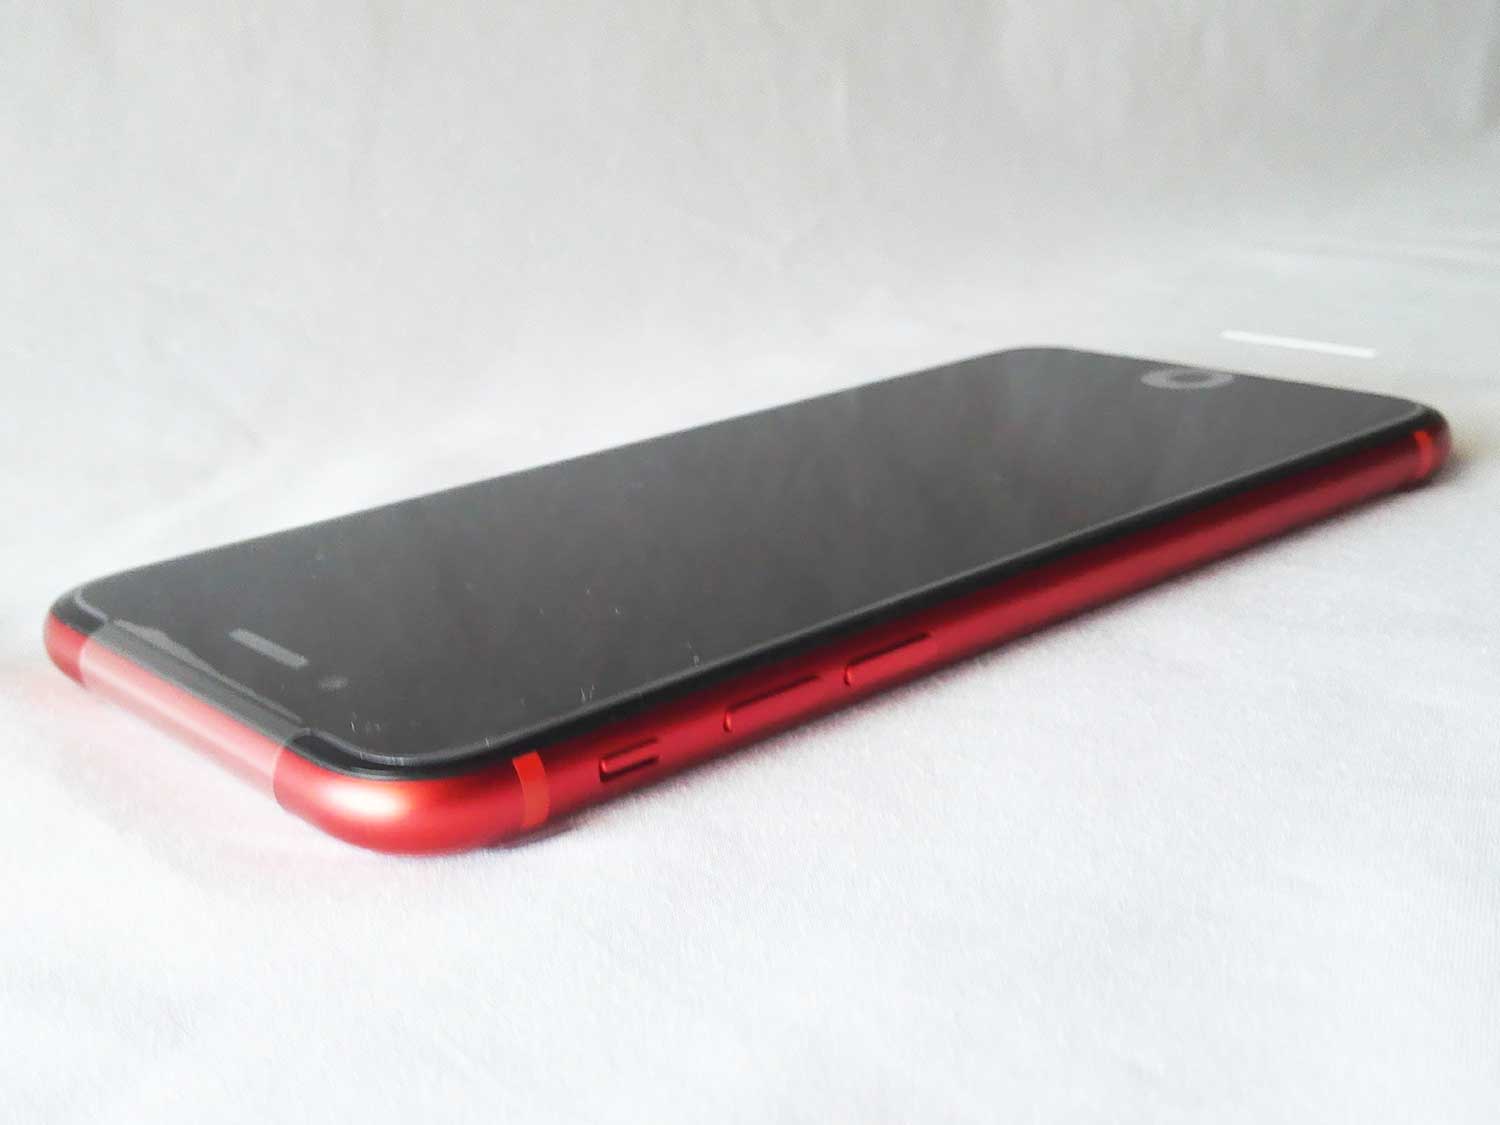 楽天モバイル Esim Iphone11に副回線として設定する方法 スマホ料金の節約に スマ女 初心者のためのスマートフォン